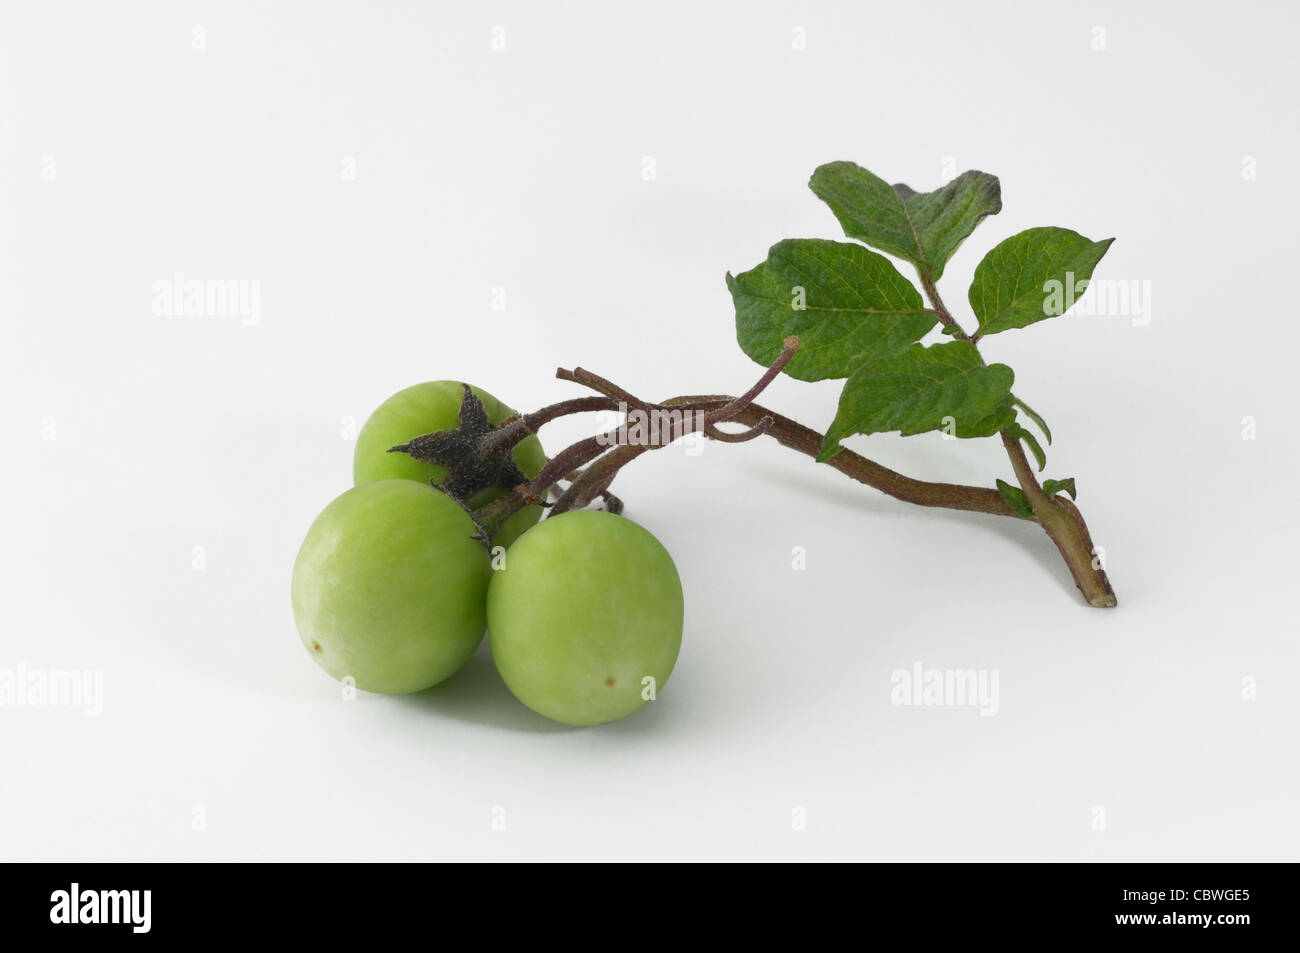 La papa (Solanum tuberosum). Tallo con pequeños frutos verdes. Studio picture contra un fondo blanco. Foto de stock